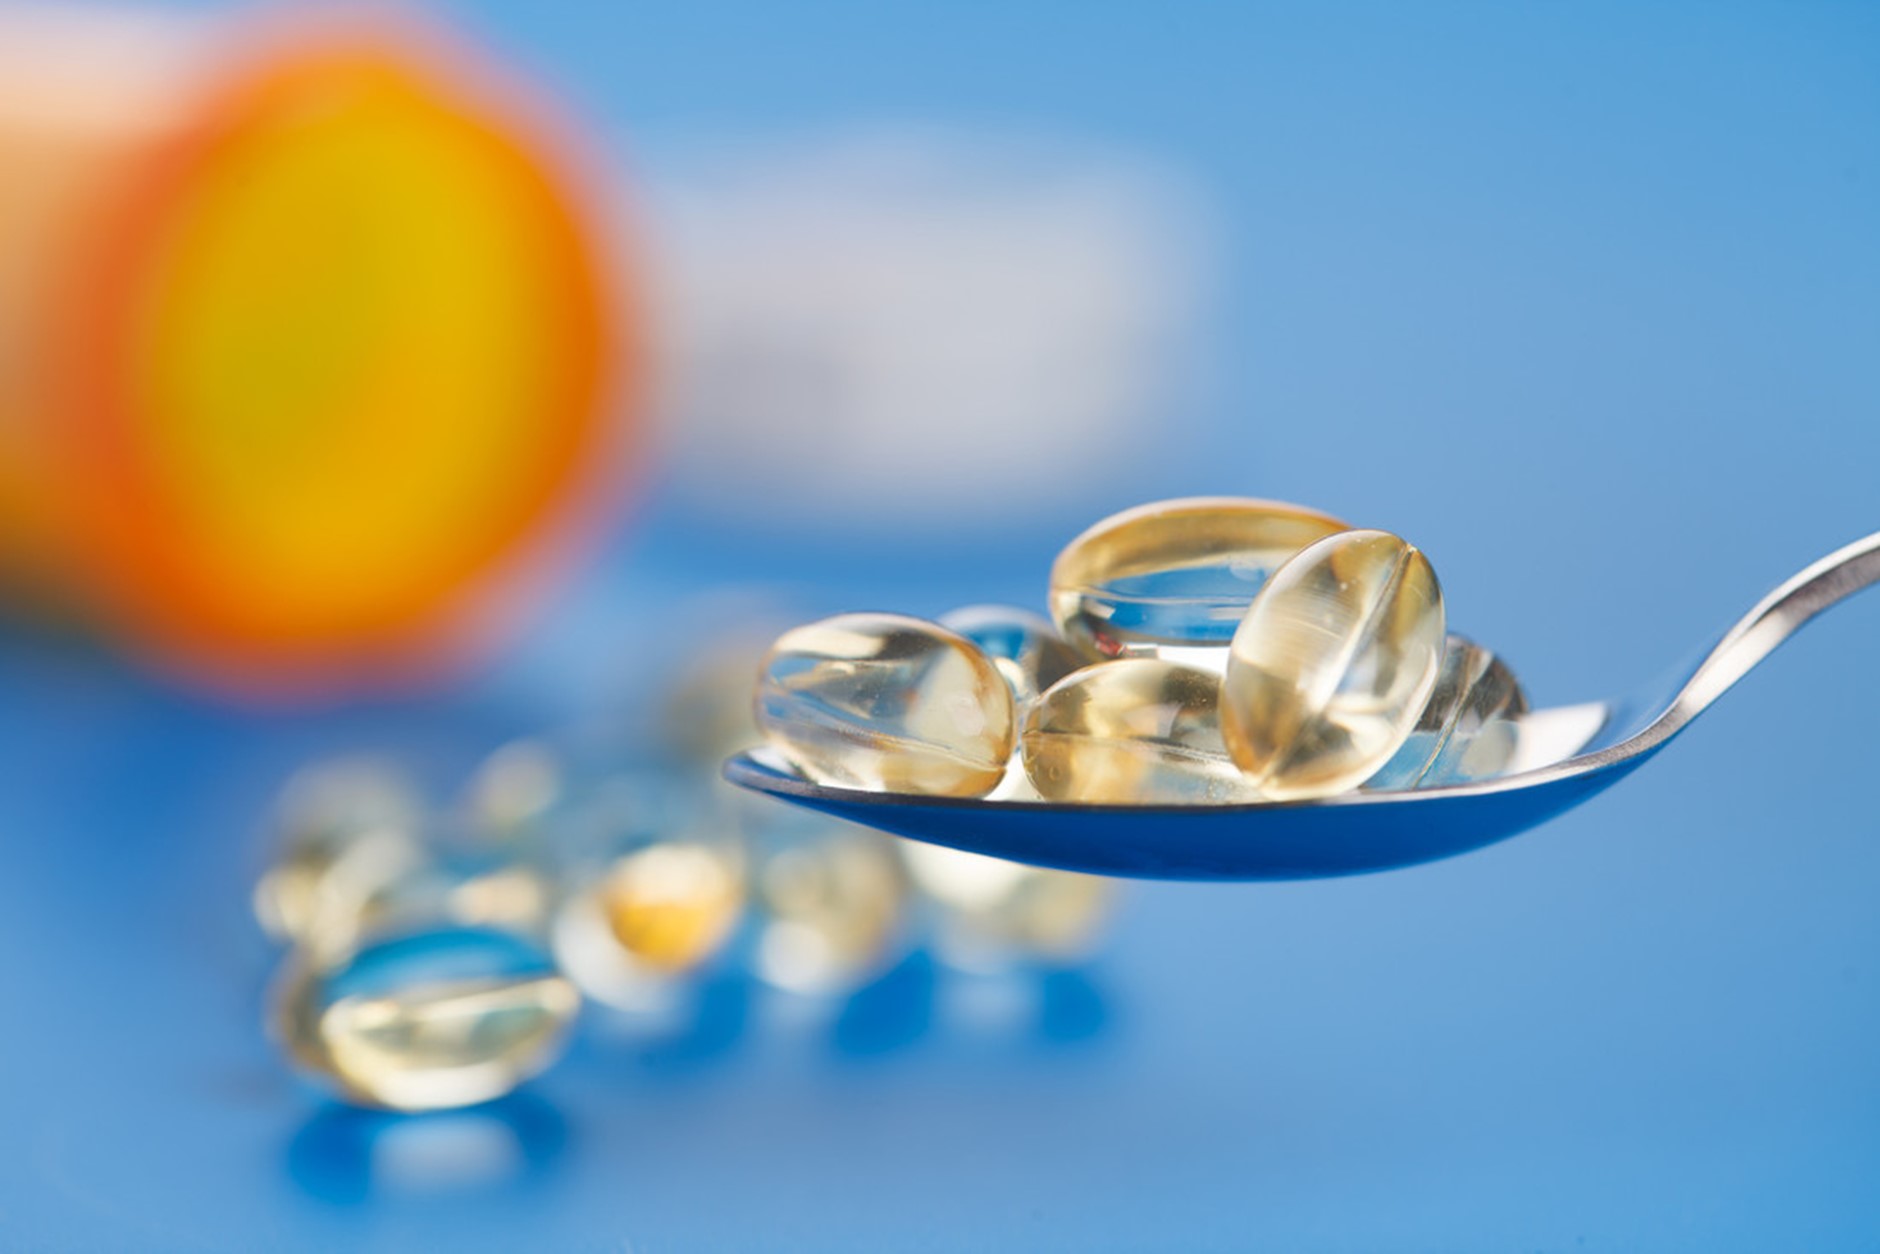 Millised sümptomid esinevad D-vitamiini puuduse korral?